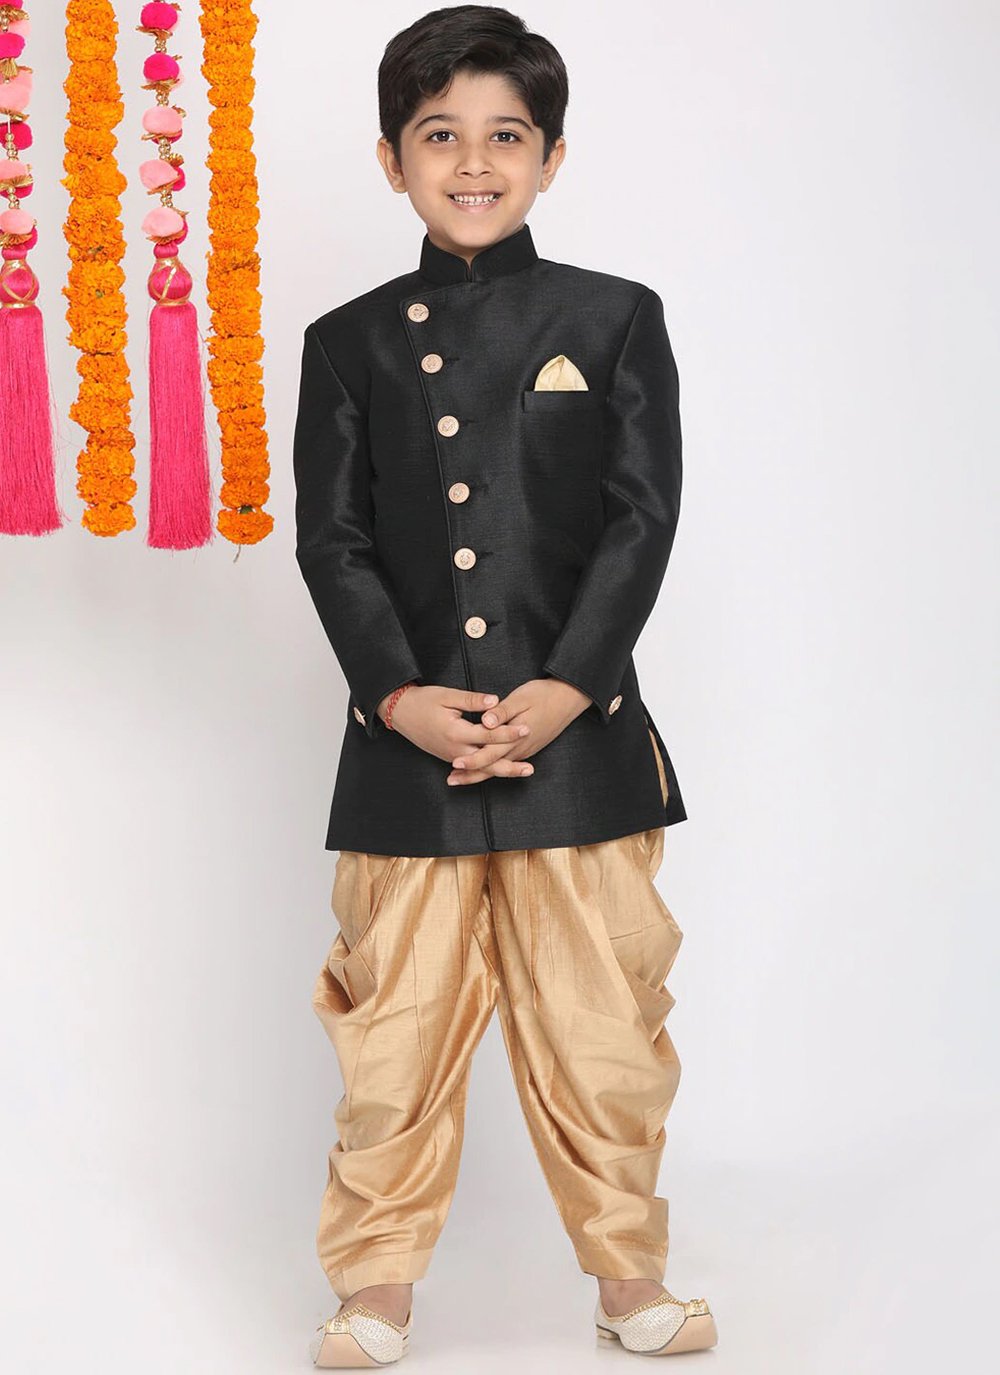 Boys Jodhpuri Suits for Royal Wedding – Mumkins